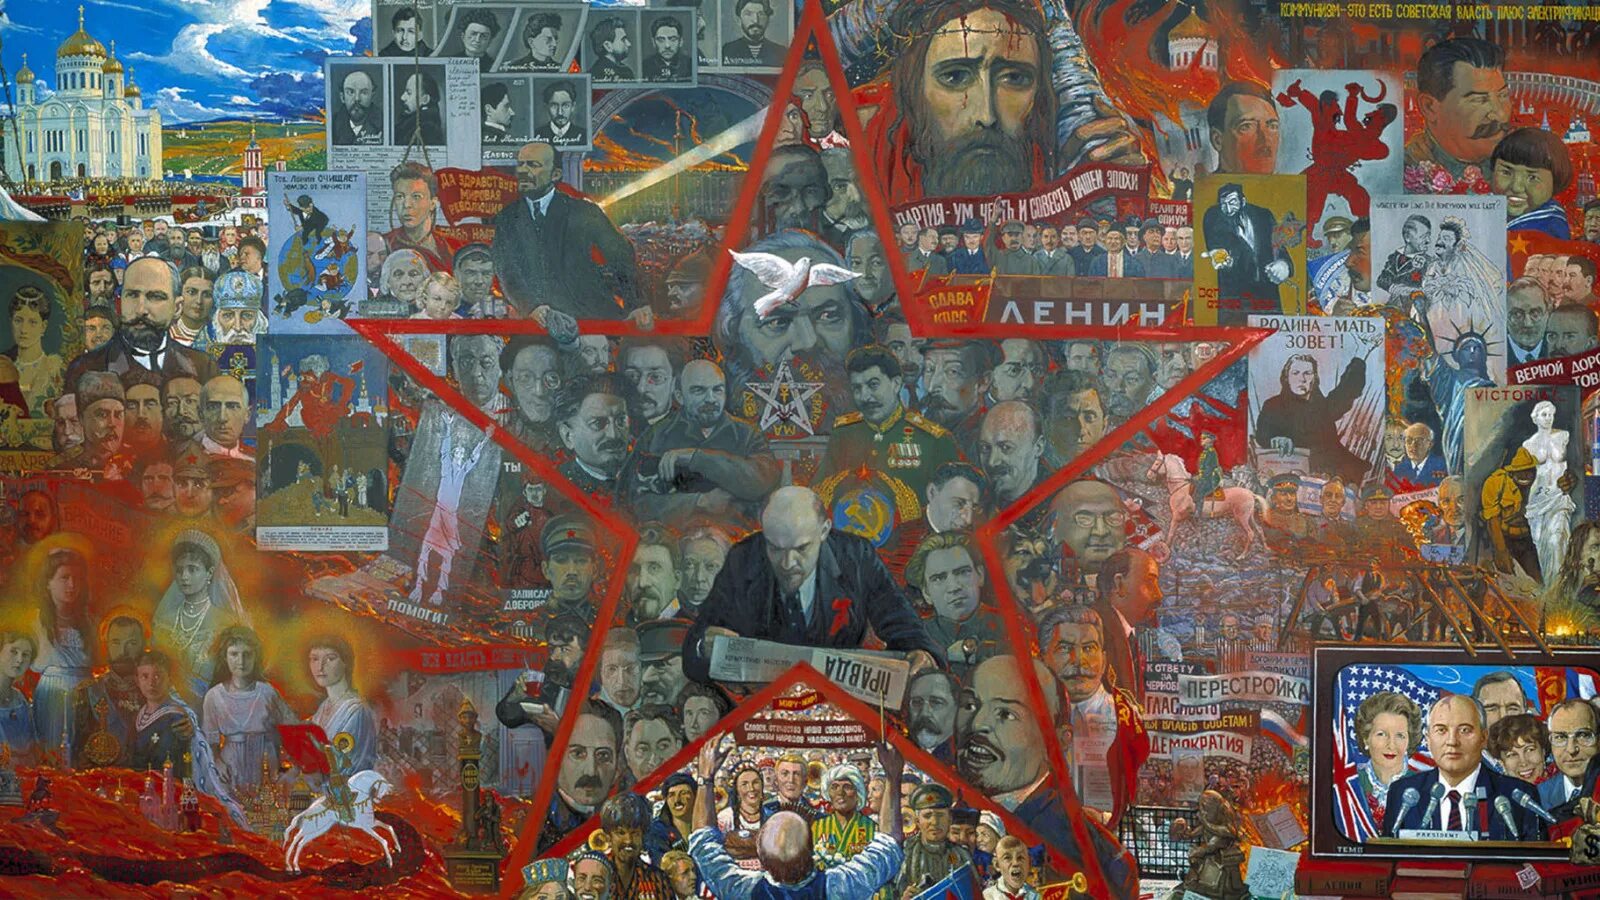 Мистерия 20 века Глазунов. Ильи Глазунова «рынок нашей демократии».. Эпоха великих политиков